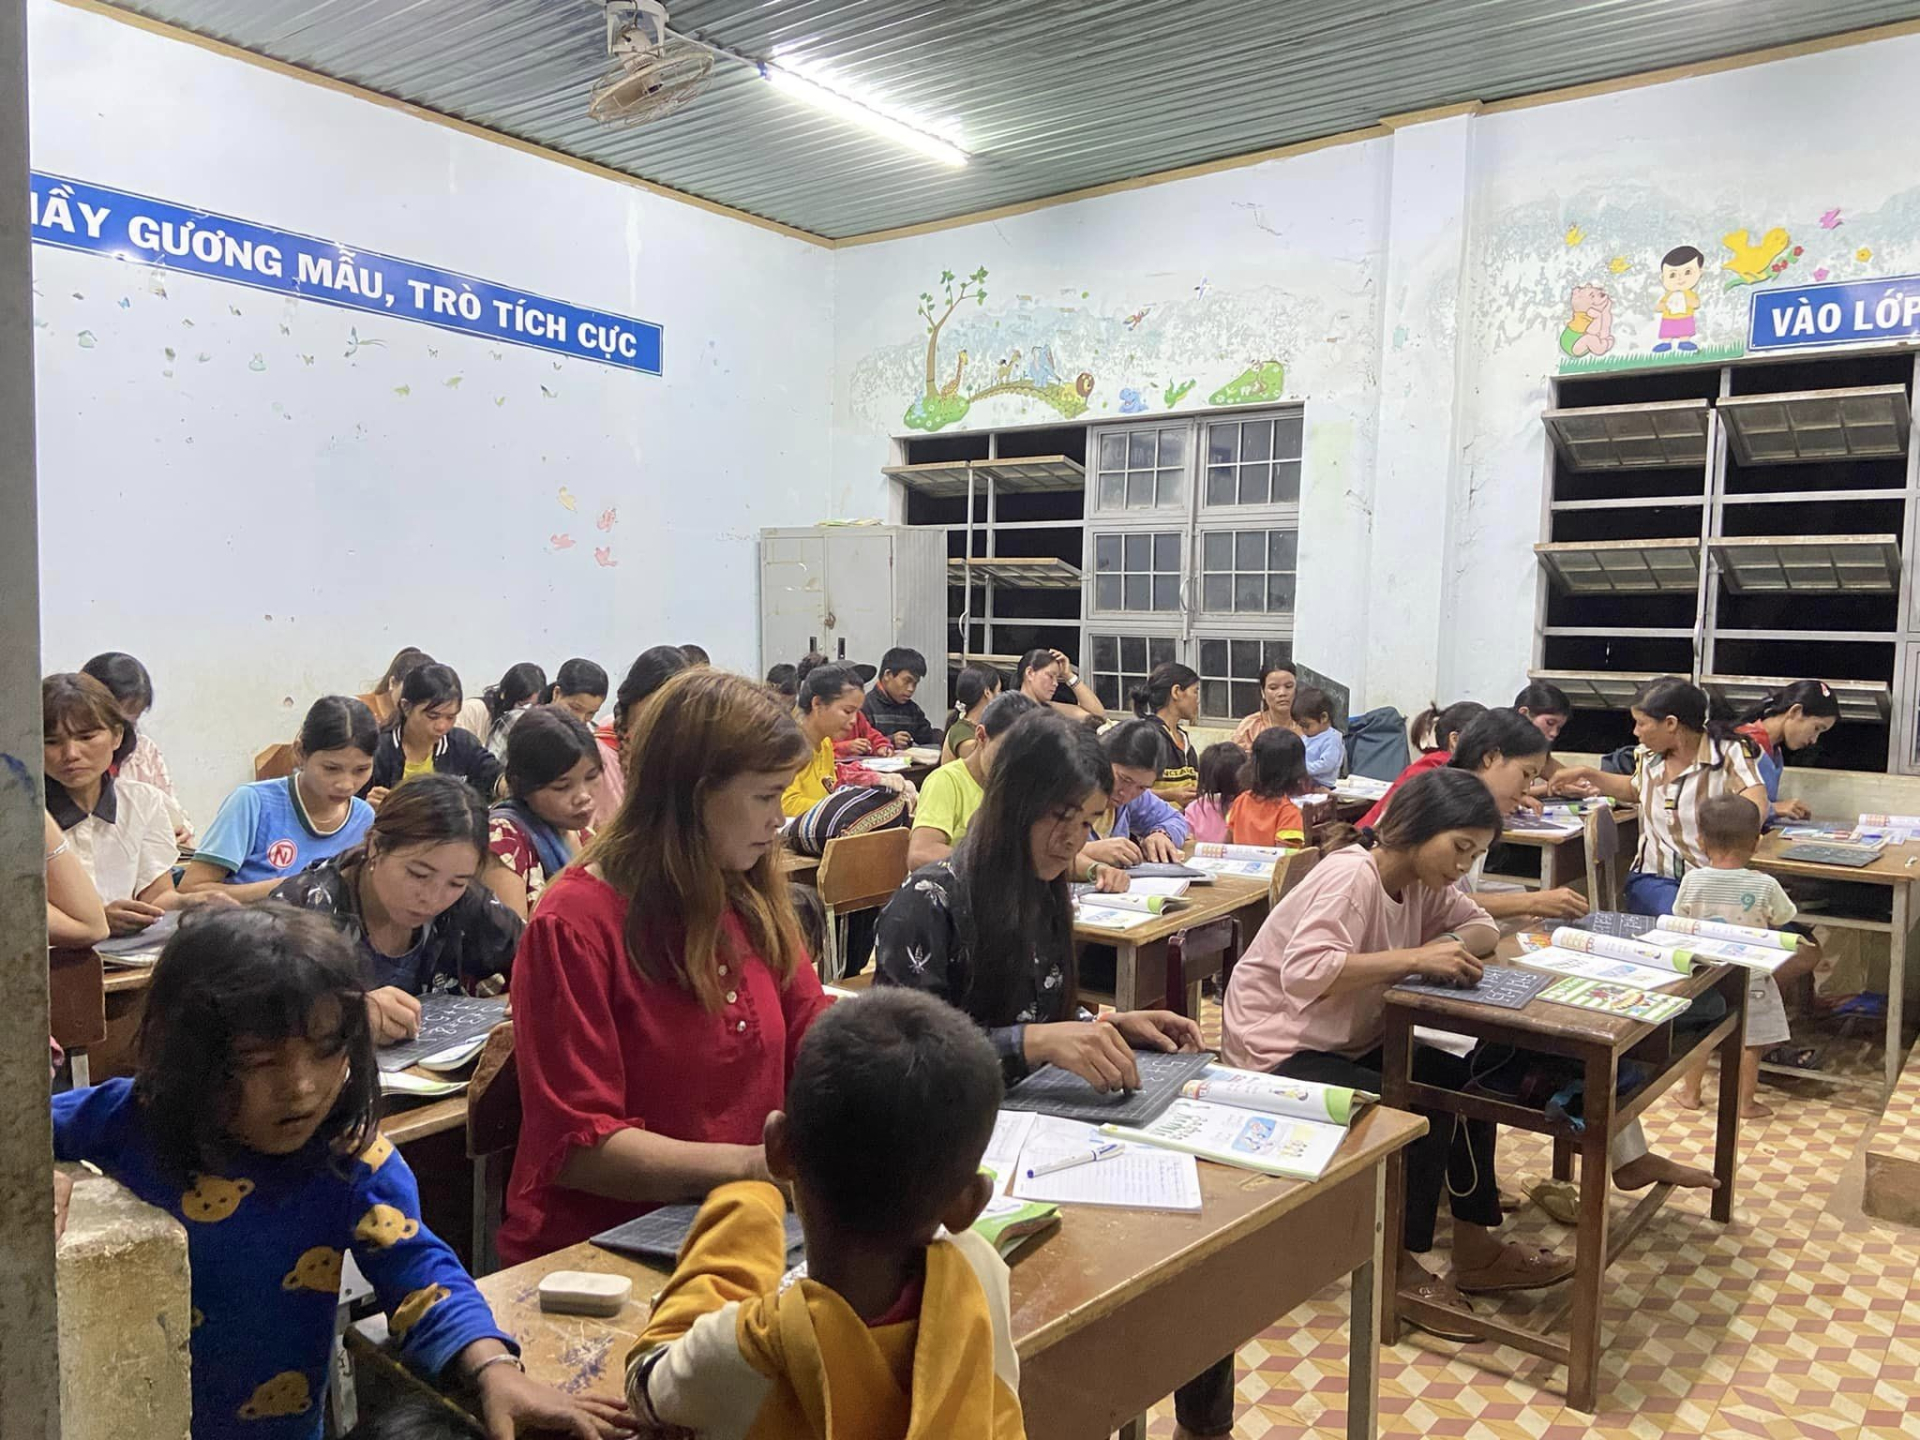 Trung úy Lê Tuấn Thành - Hành trình xây dựng lớp học tình thương cho các em nhỏ ở làng Kret Krot, tỉnh Gia Lai - ảnh 2